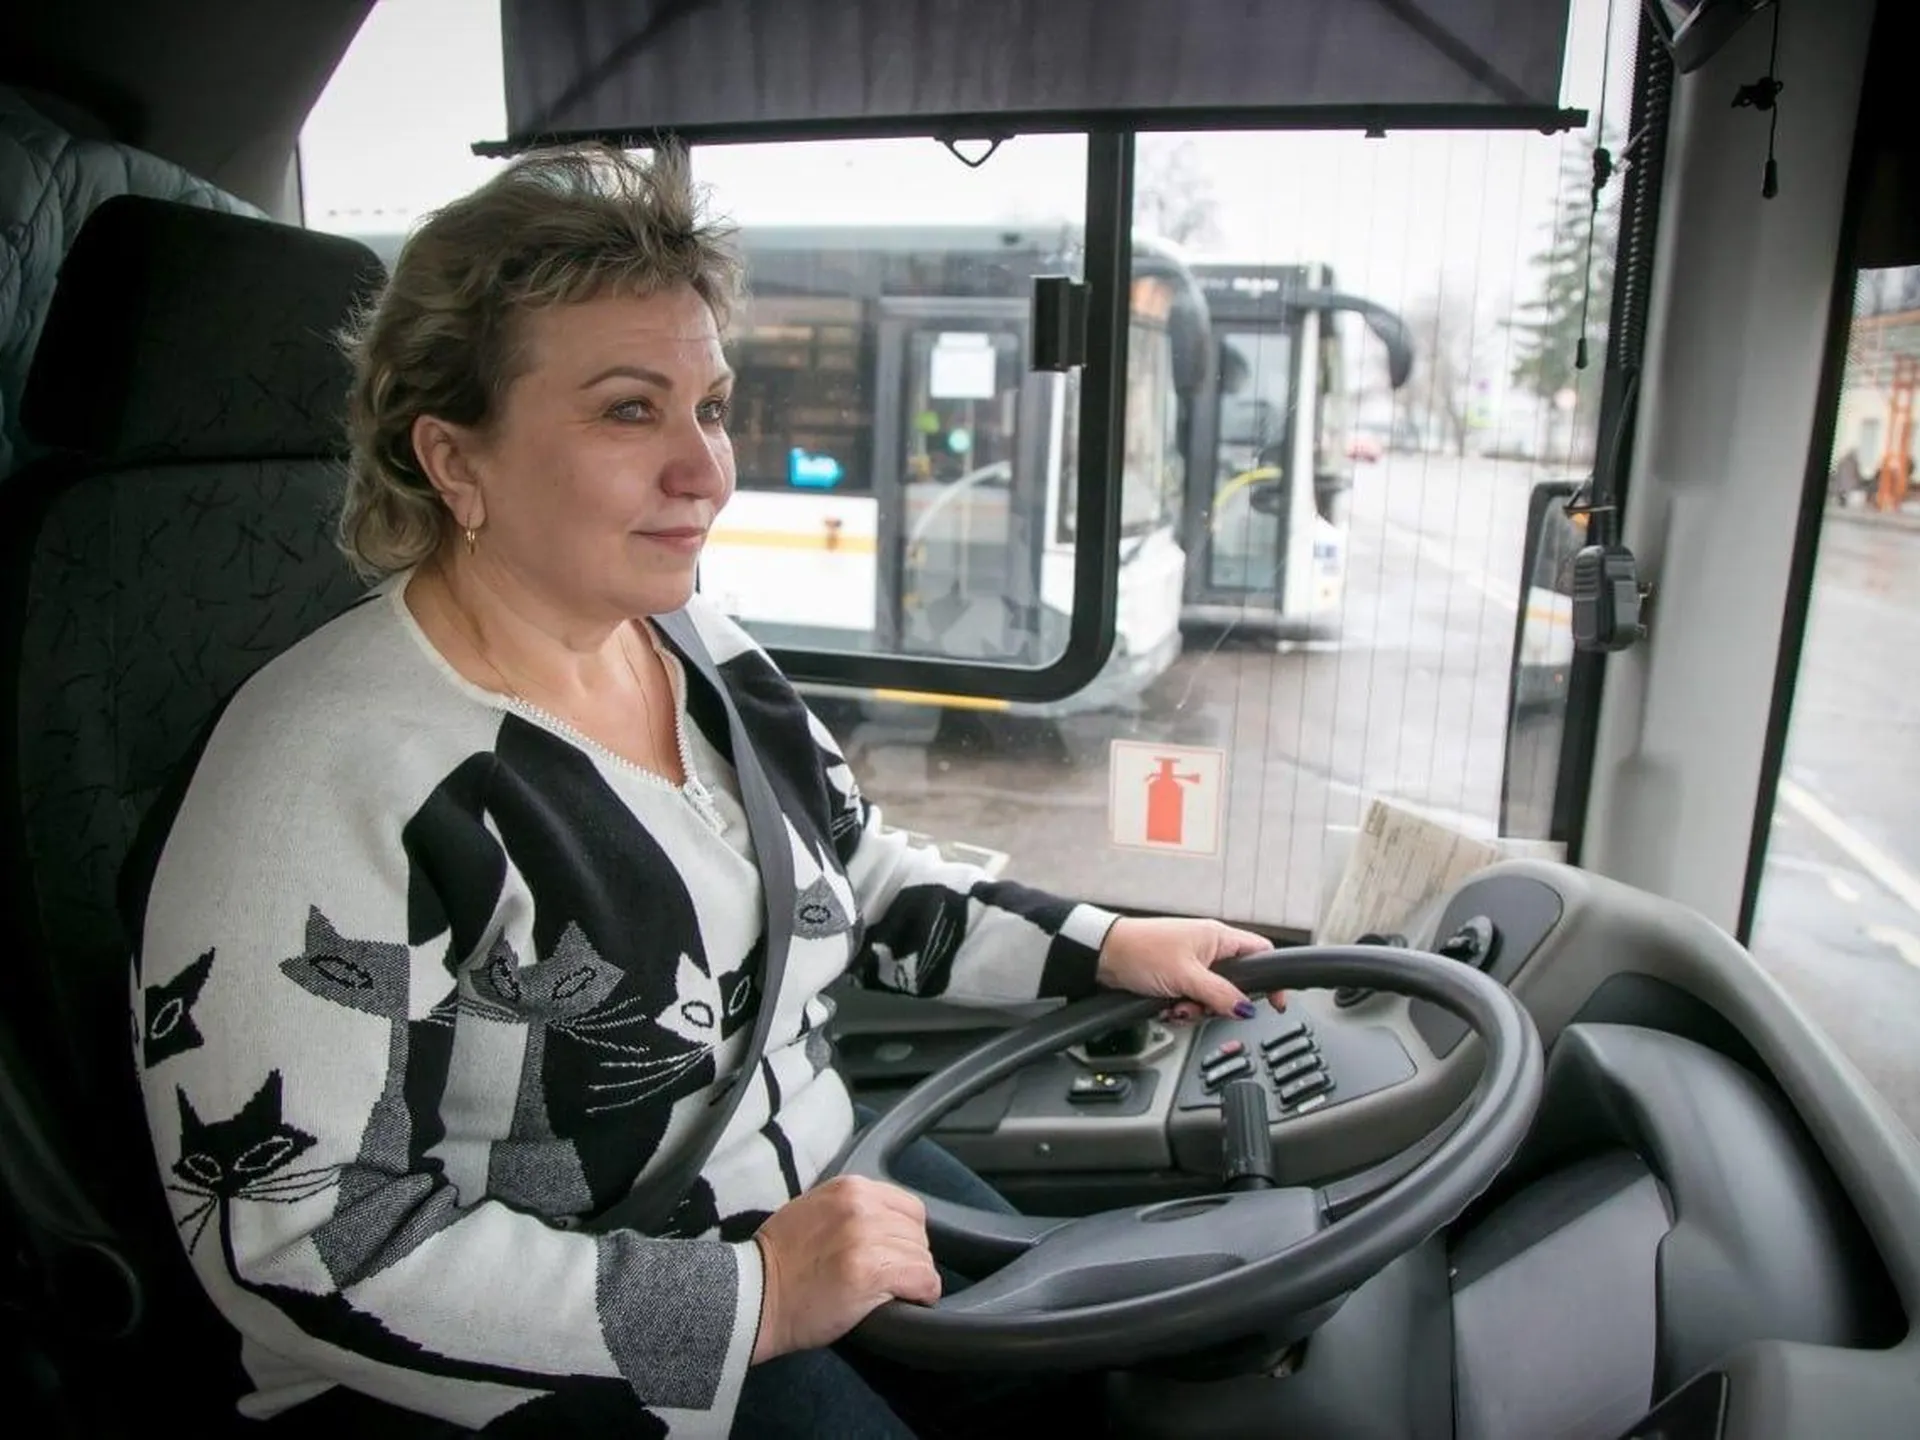 Пассажирские автобусы по улицам Коломны водит Надежда Шашкова. Профессиональную деятельность она начинала за рулем маршрутного такси, а последние 9 лет управляет автобусами большого класса.